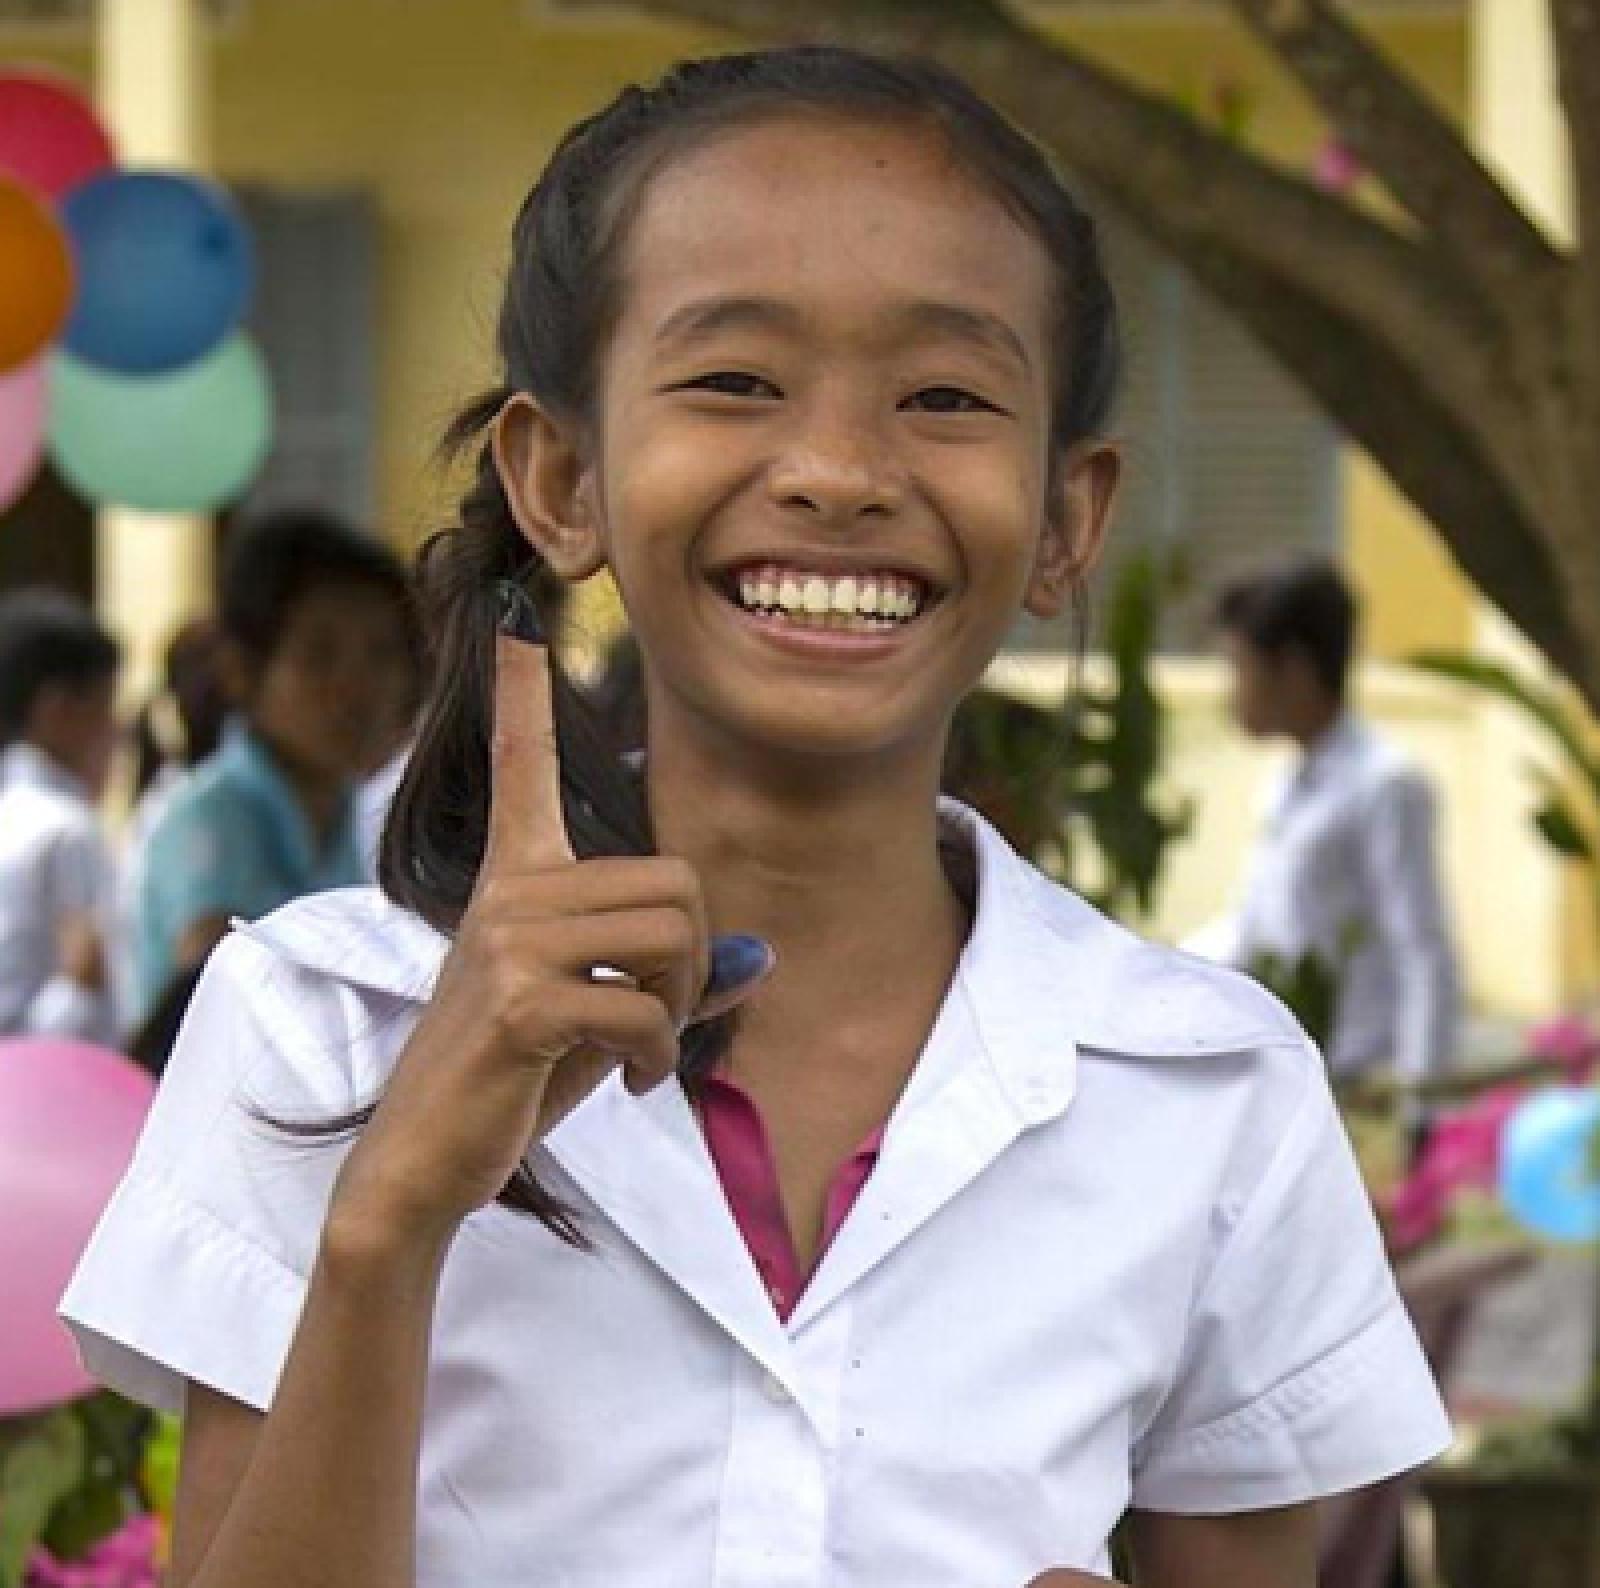 Girl holding up finger, smiling.